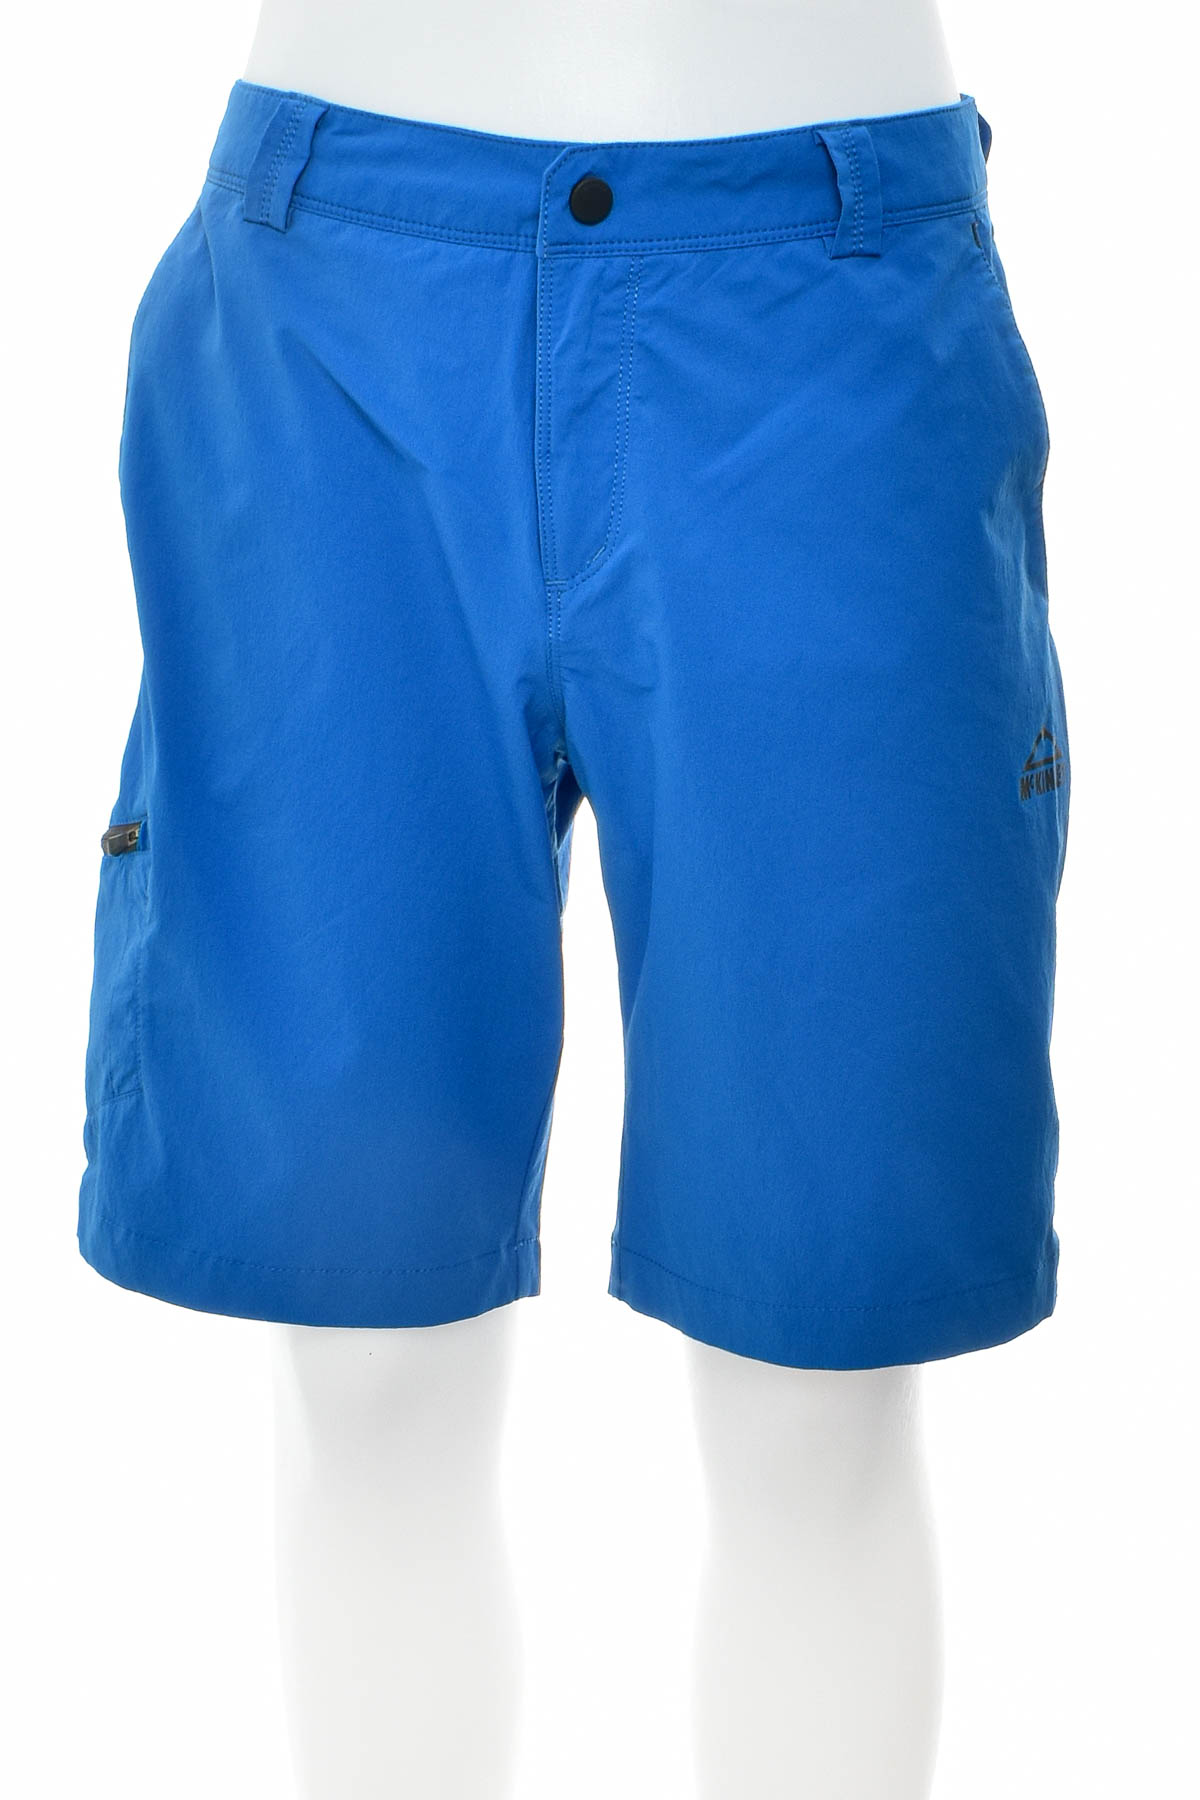 Men's shorts - McKinley - 0